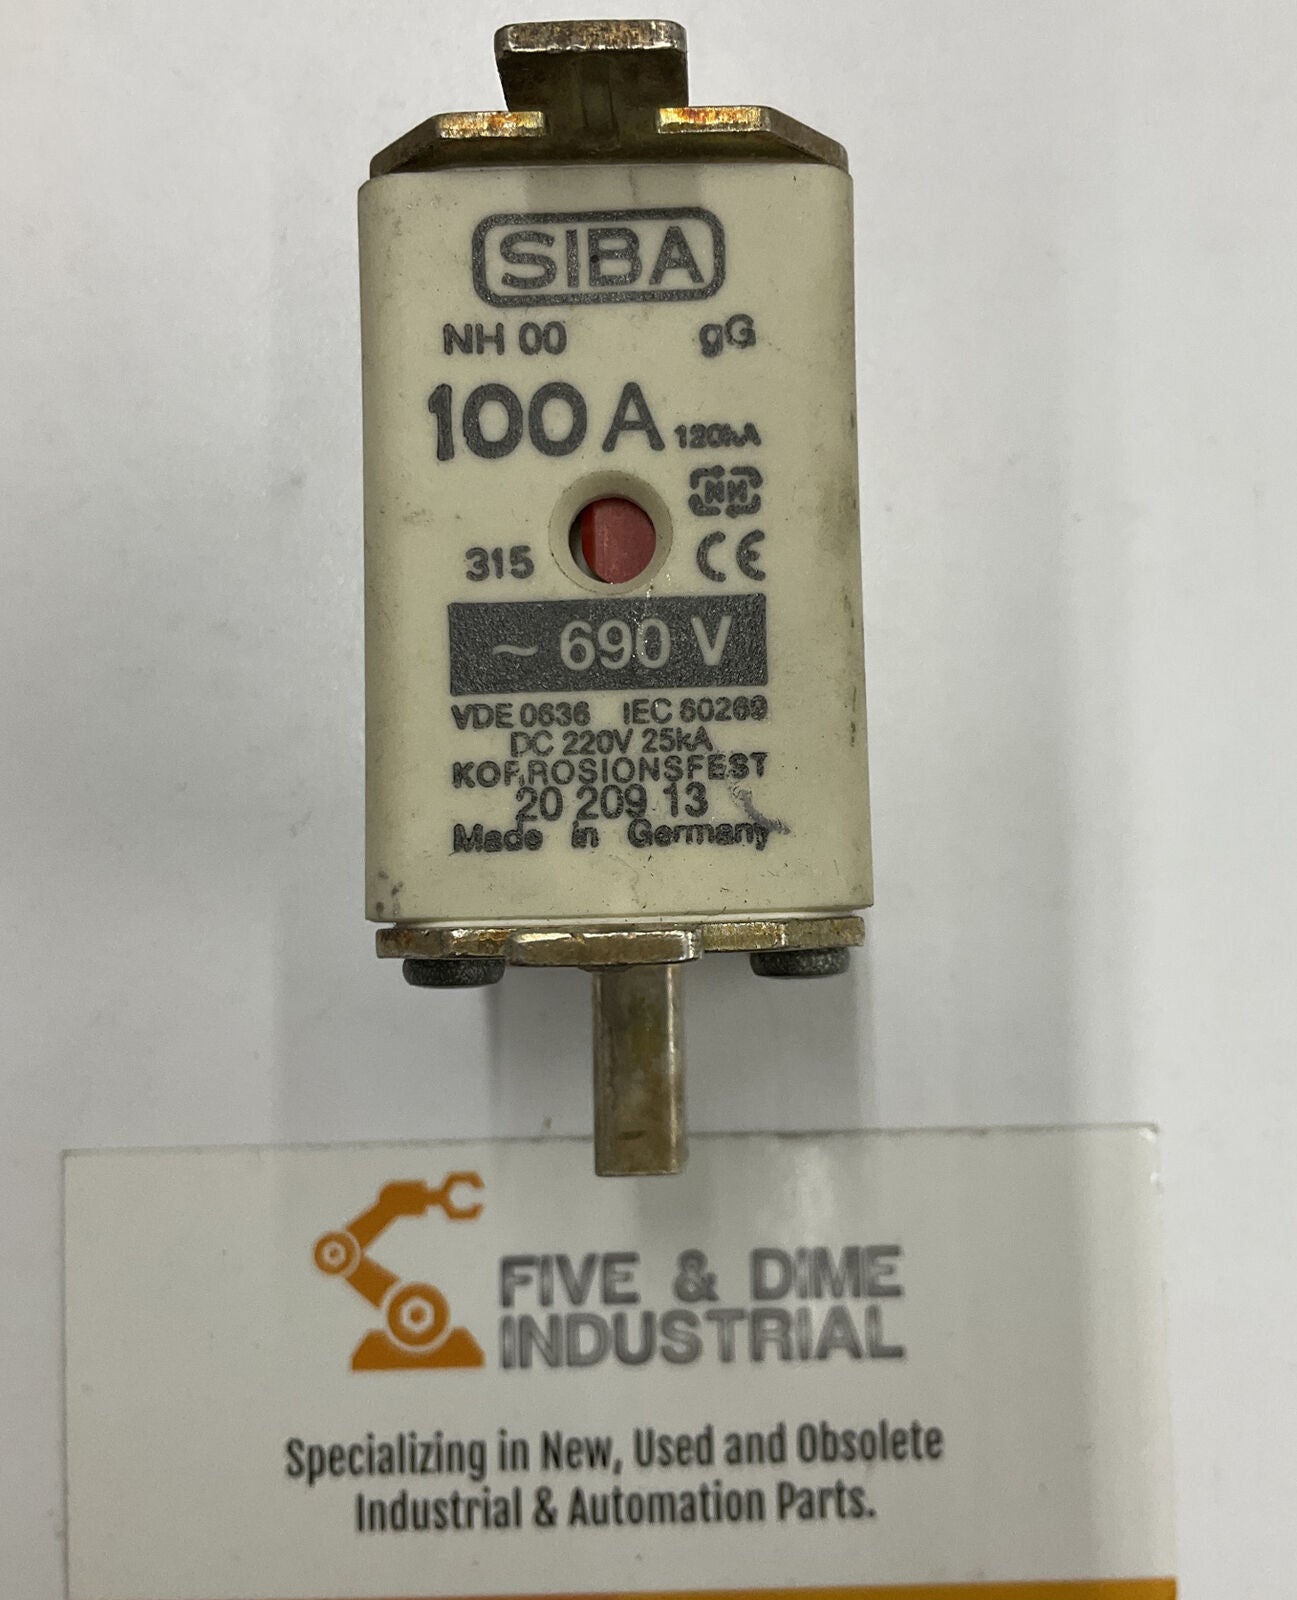 SIBA NH 00 VDE 0636 IEC 80269 100A 690V (GR168)